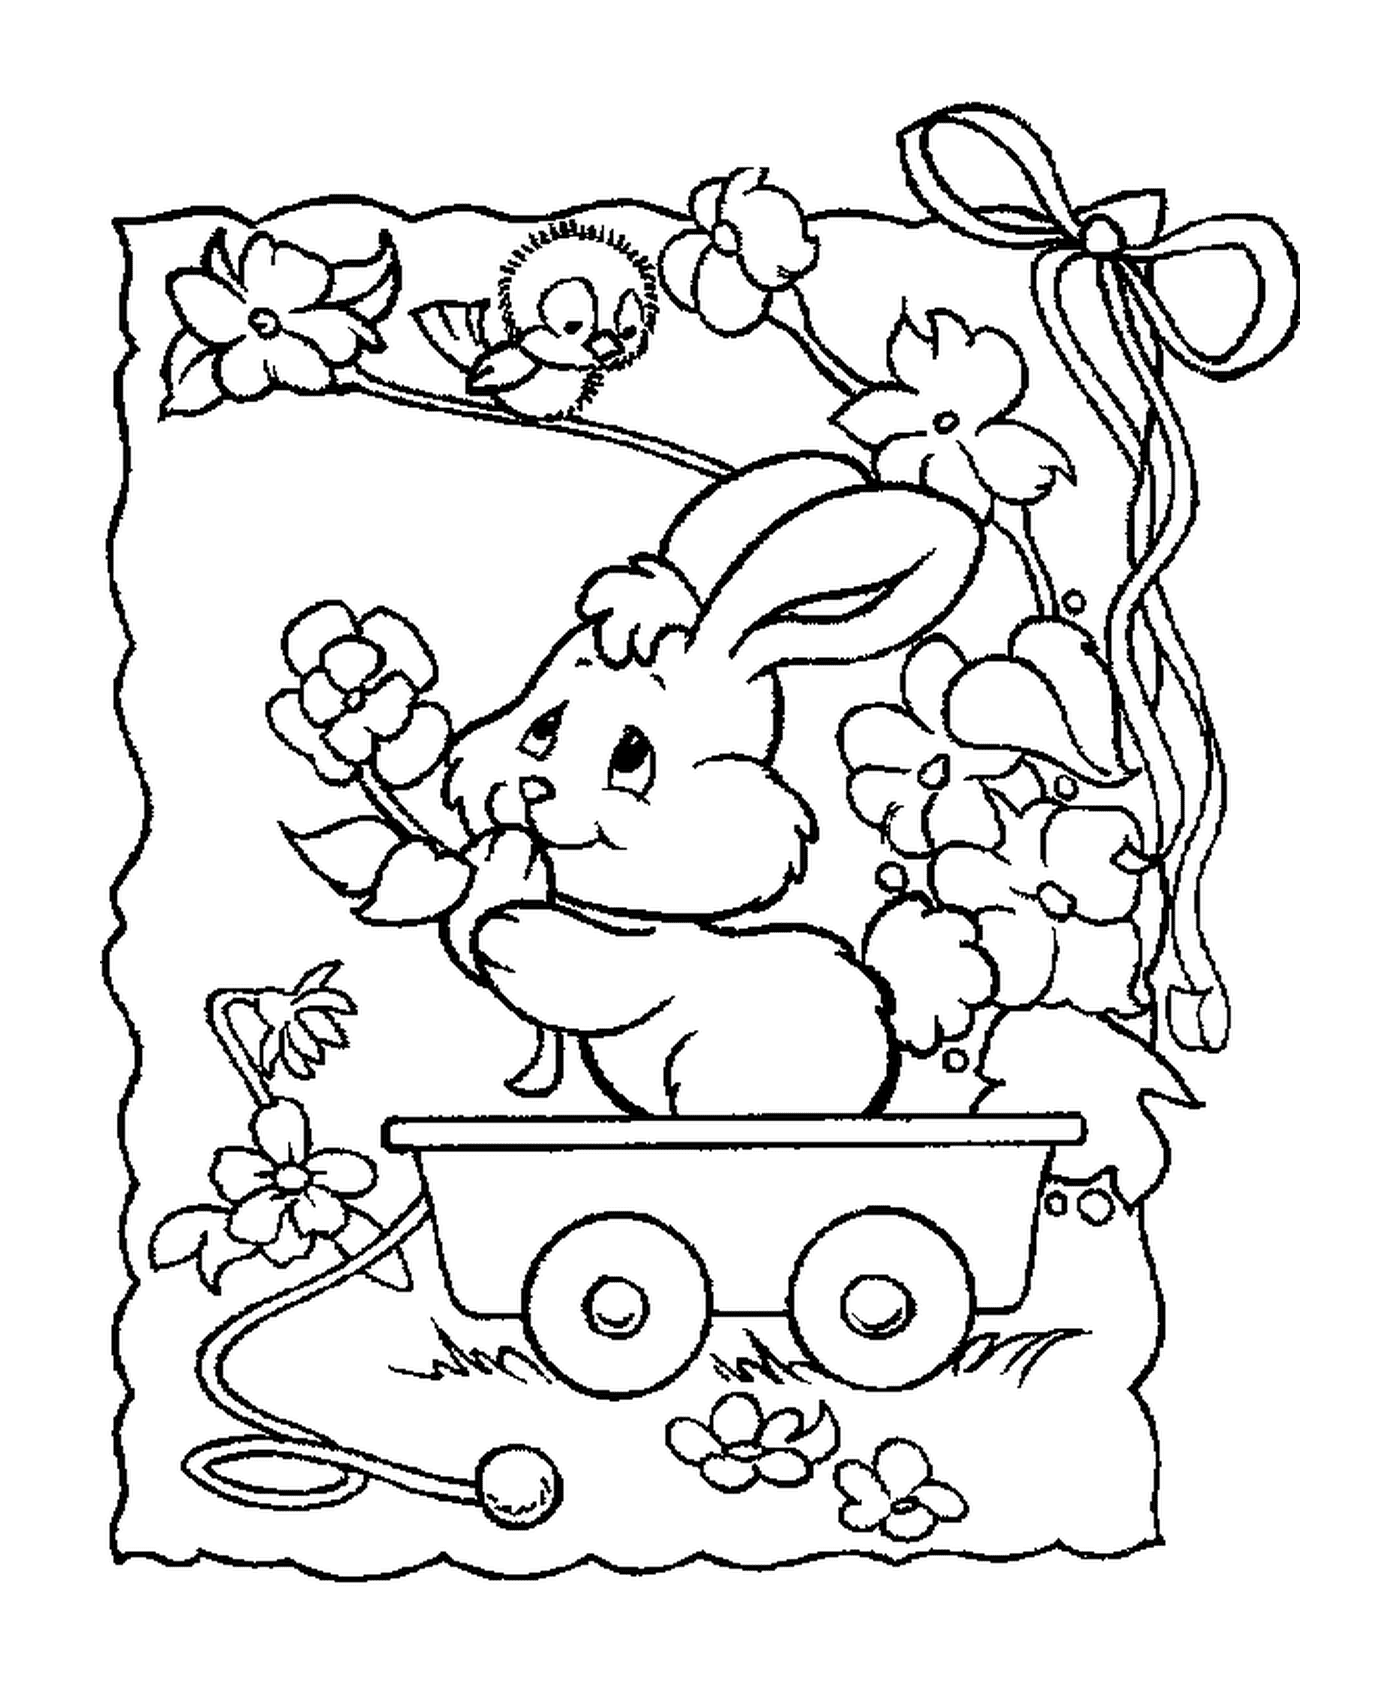  Ein Kaninchen sitzt in einem Wagen 